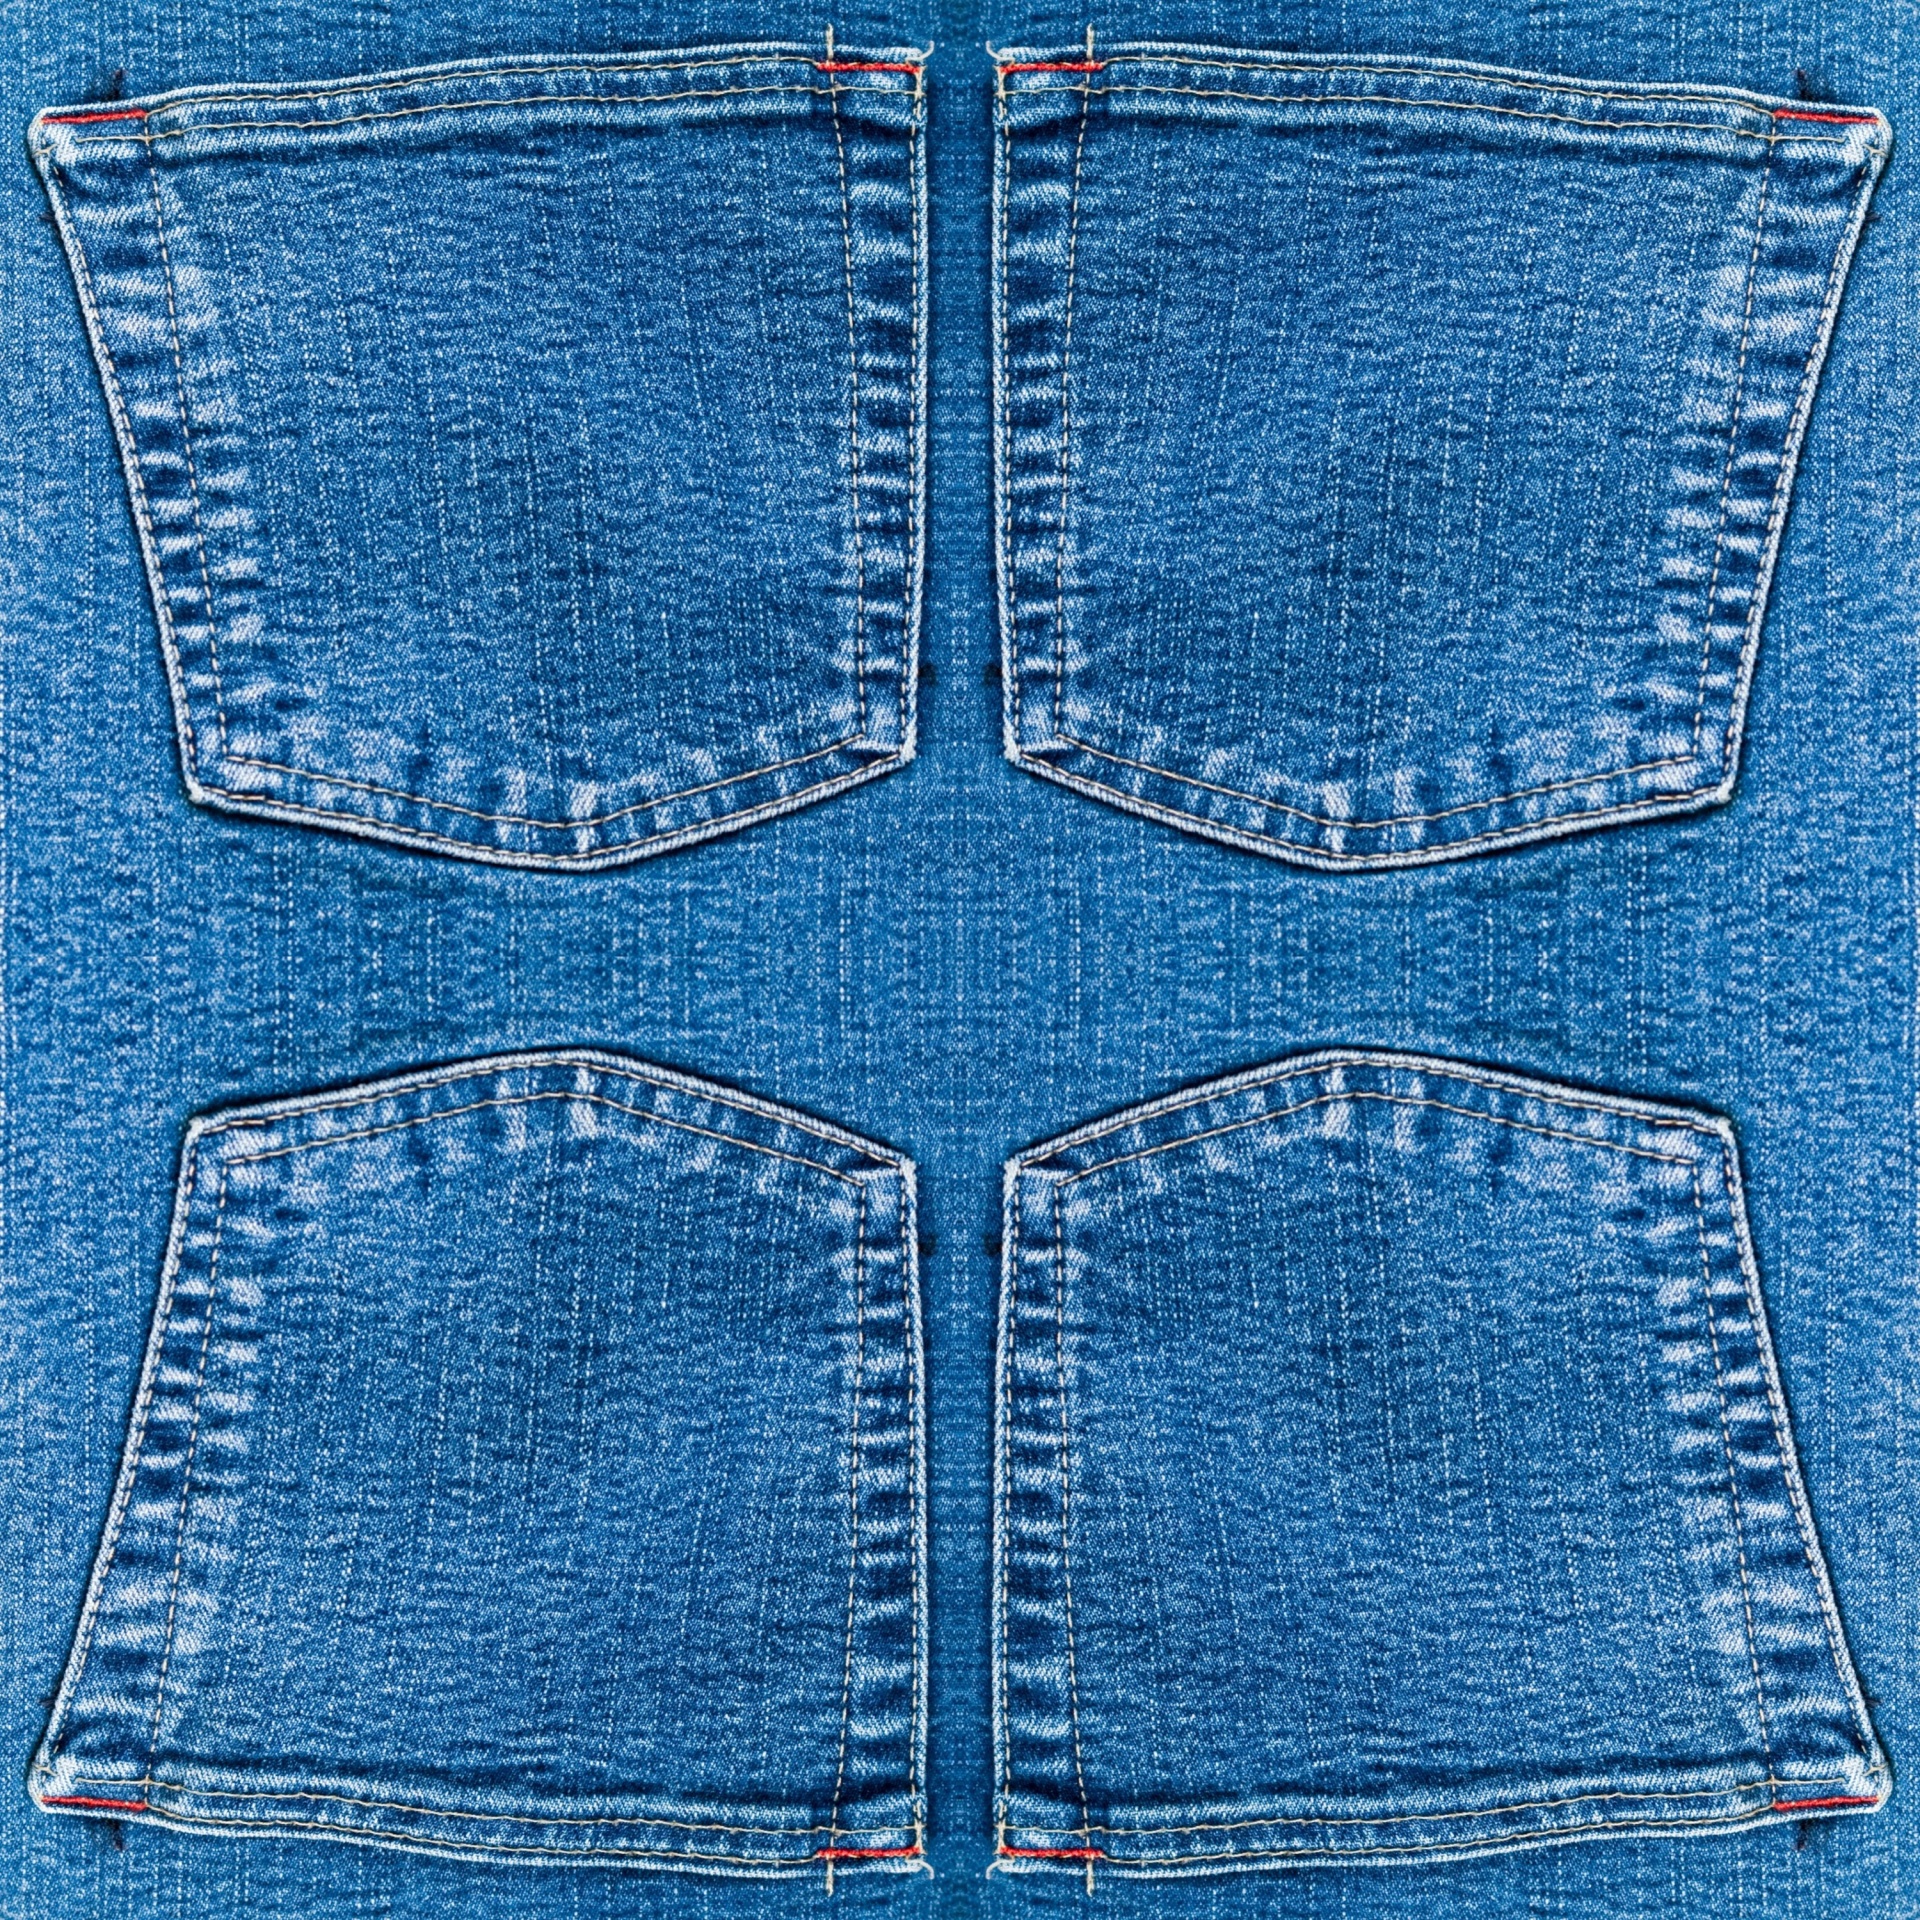 Текстура джинсов. Джинсовая ткань. Текстура джинсовой ткани. Джинсовый фон. Джинсовая ткань для фотошопа.